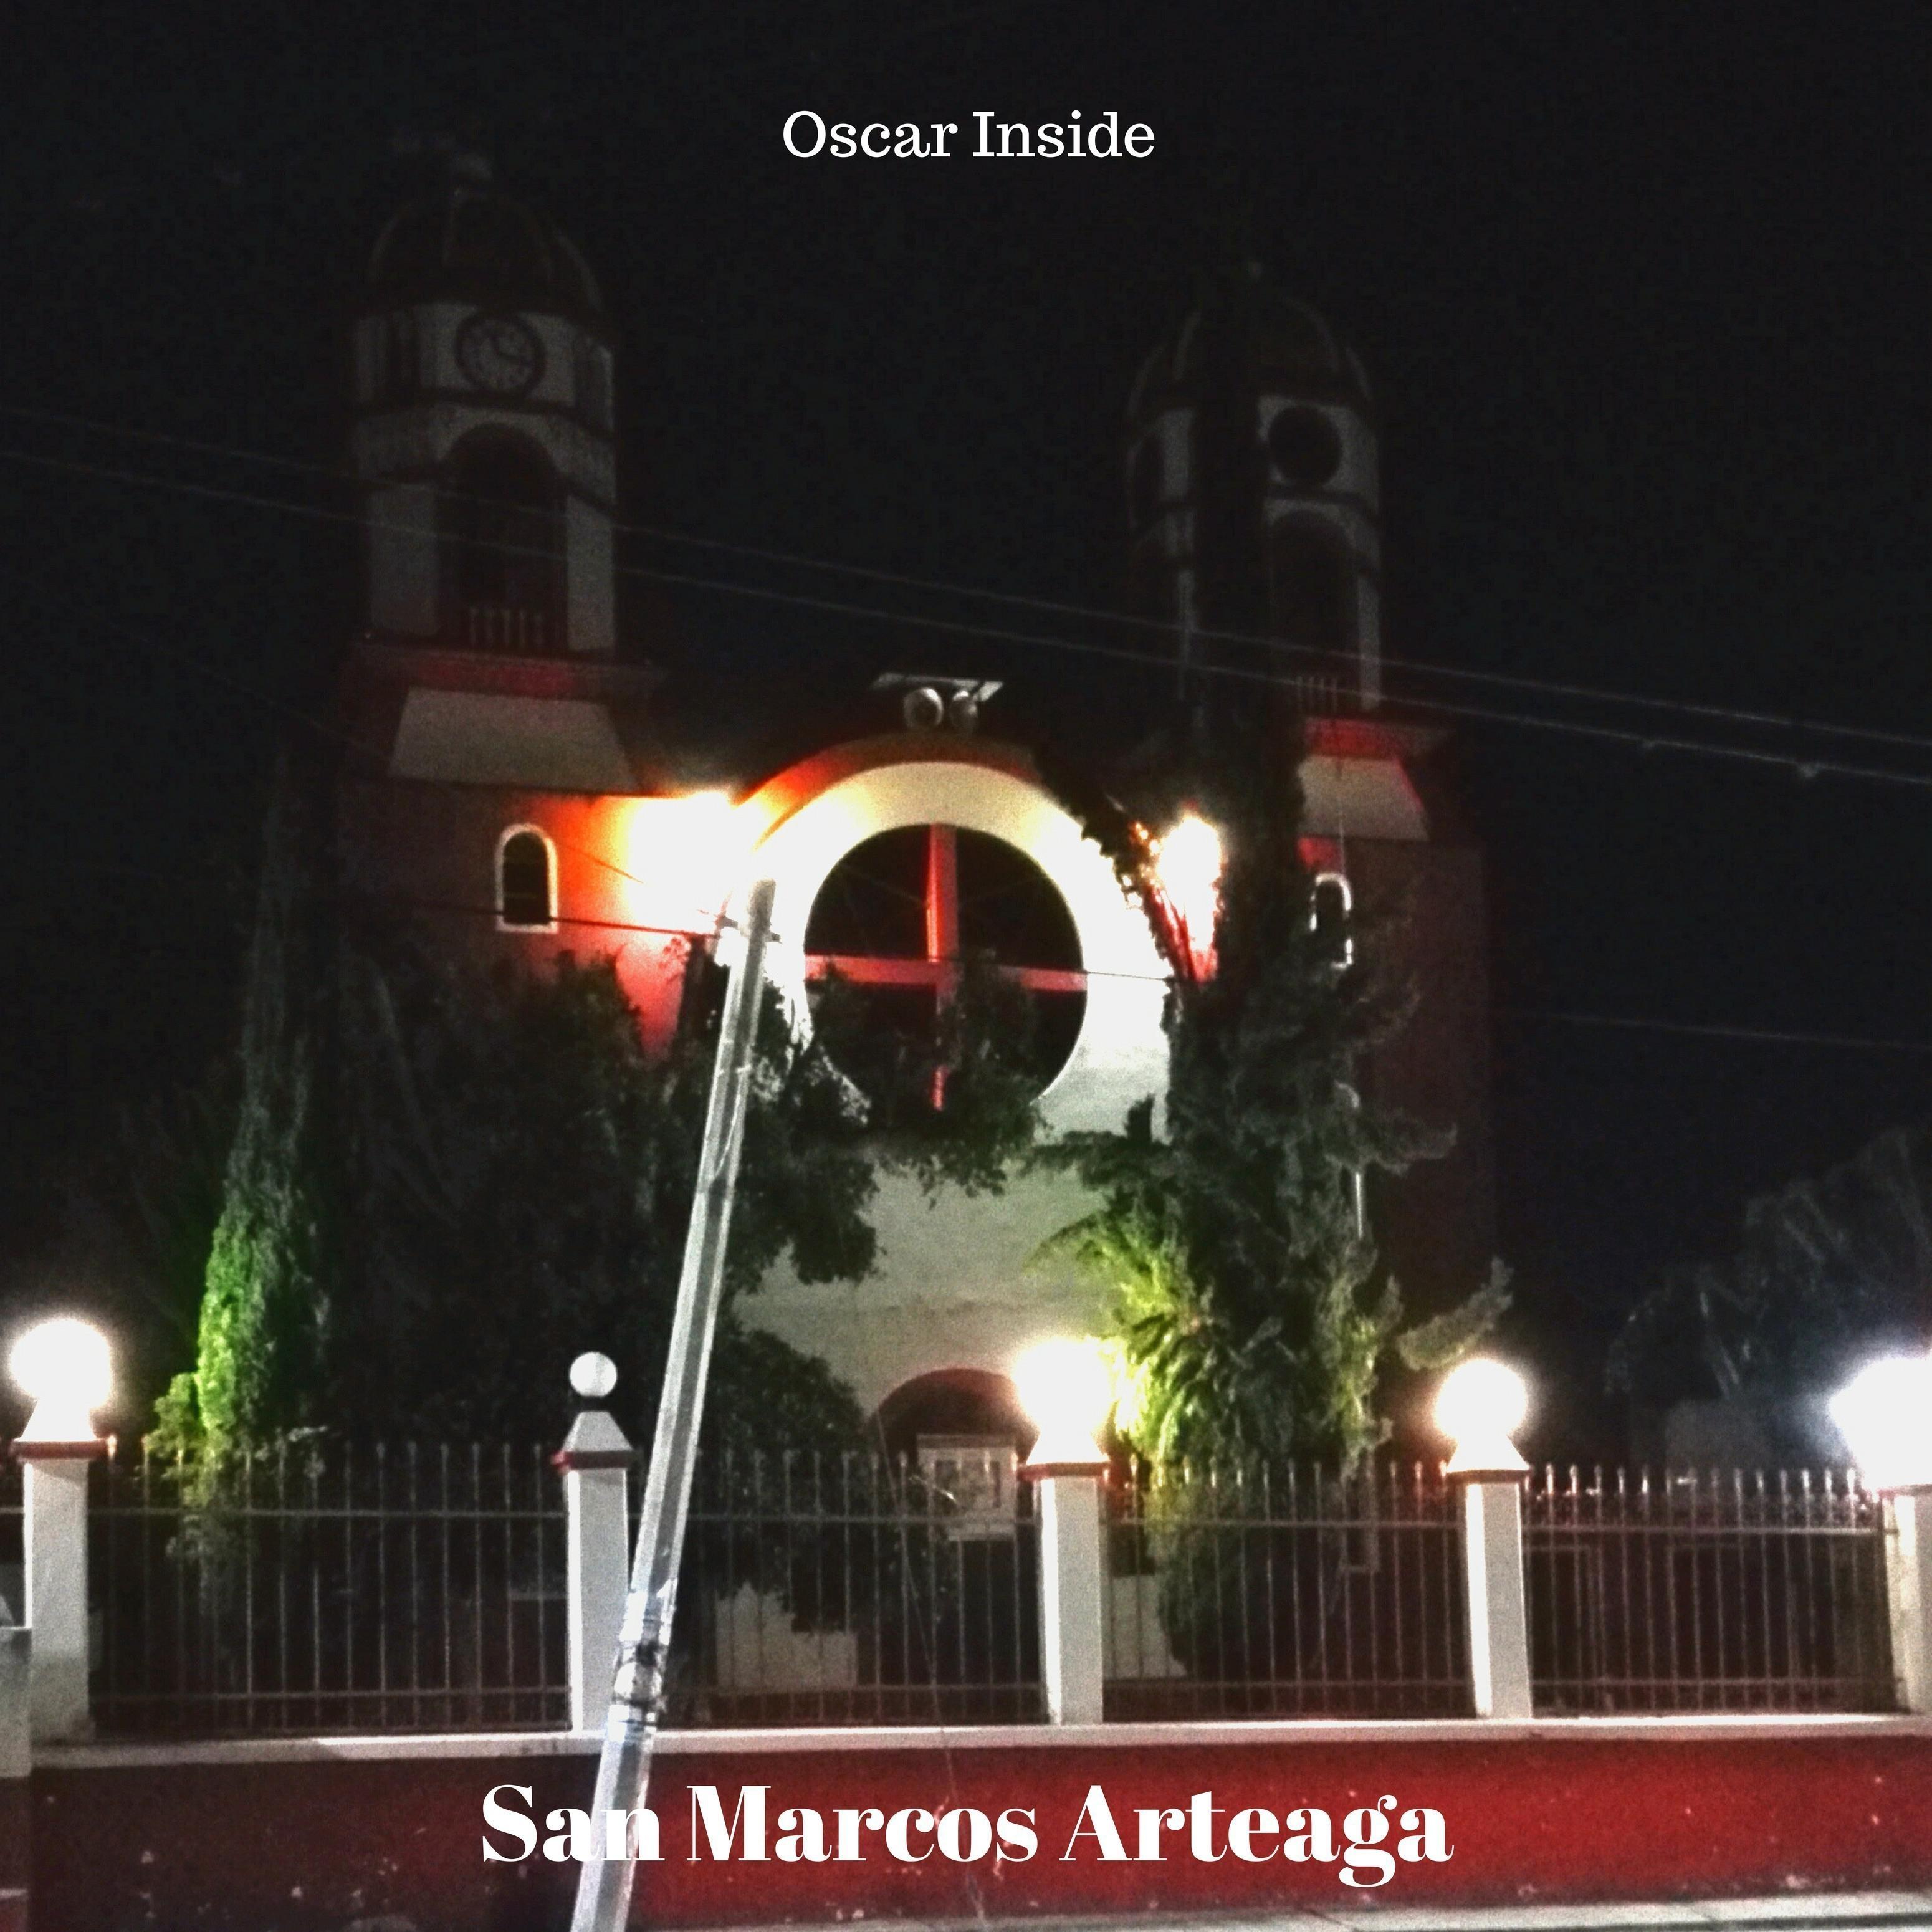 San Marcos Arteaga